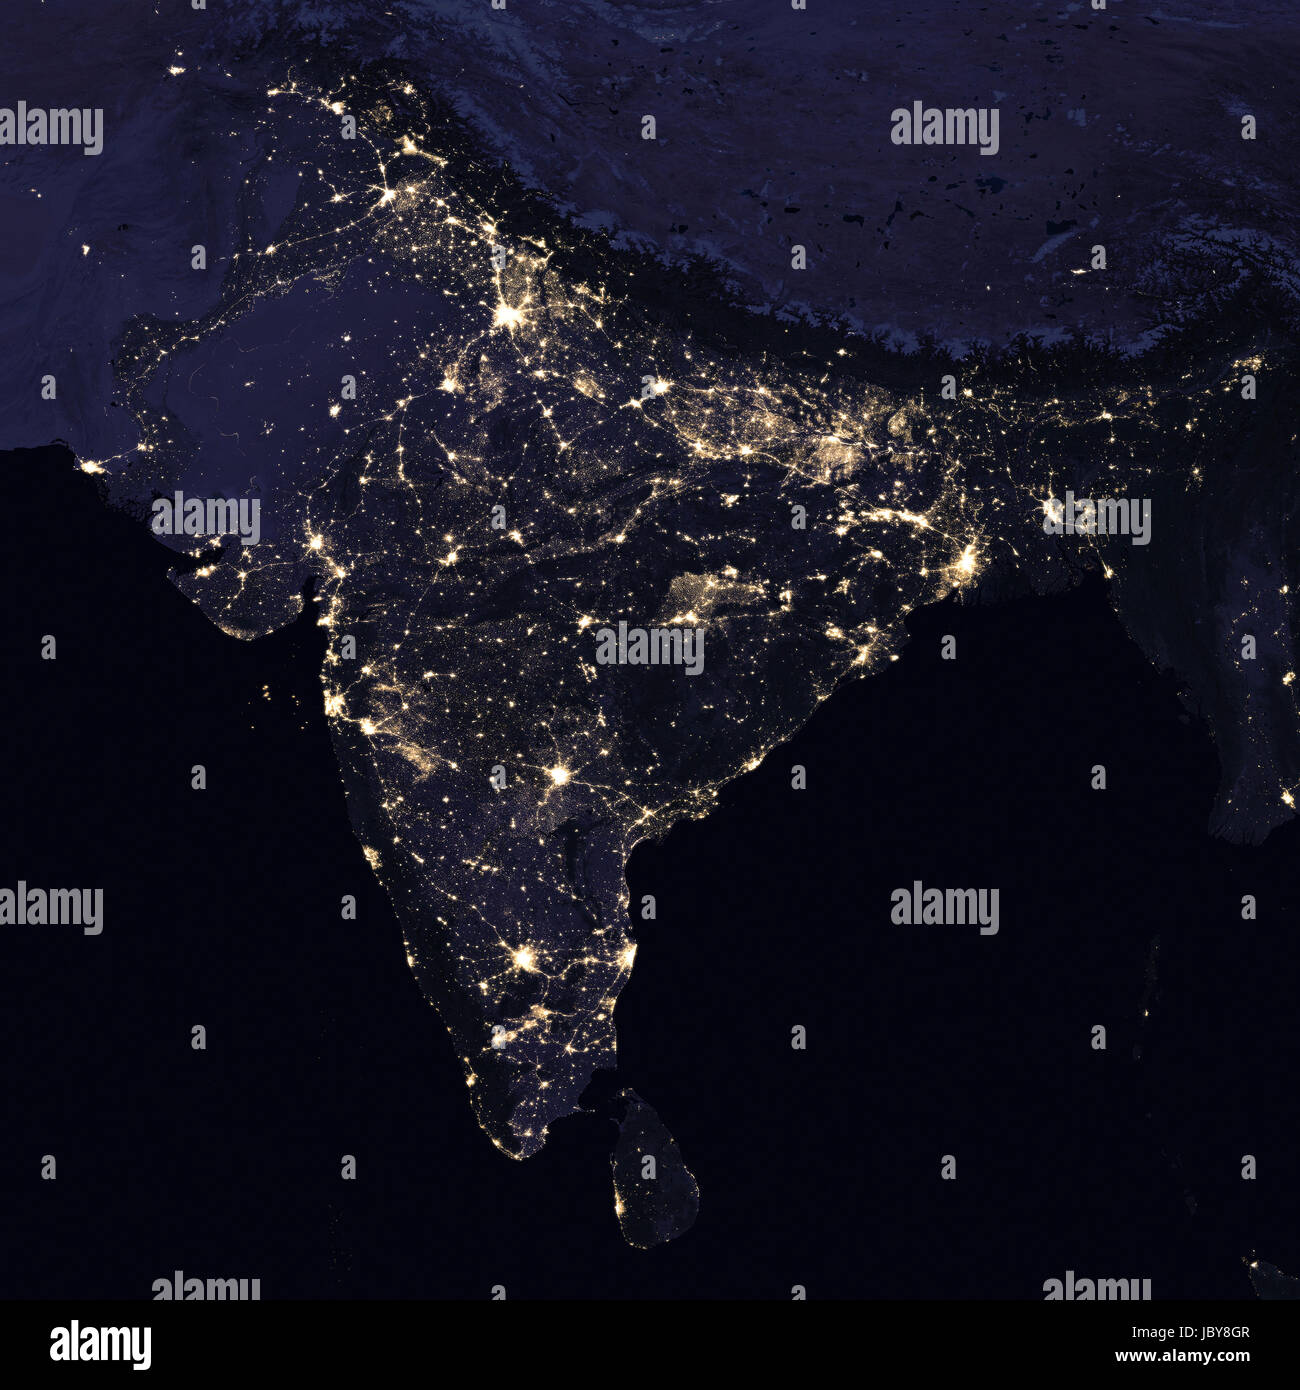 India Nachtansicht aus dem Weltraum. Elemente des Bildes von der NASA eingerichtet. Stockfoto